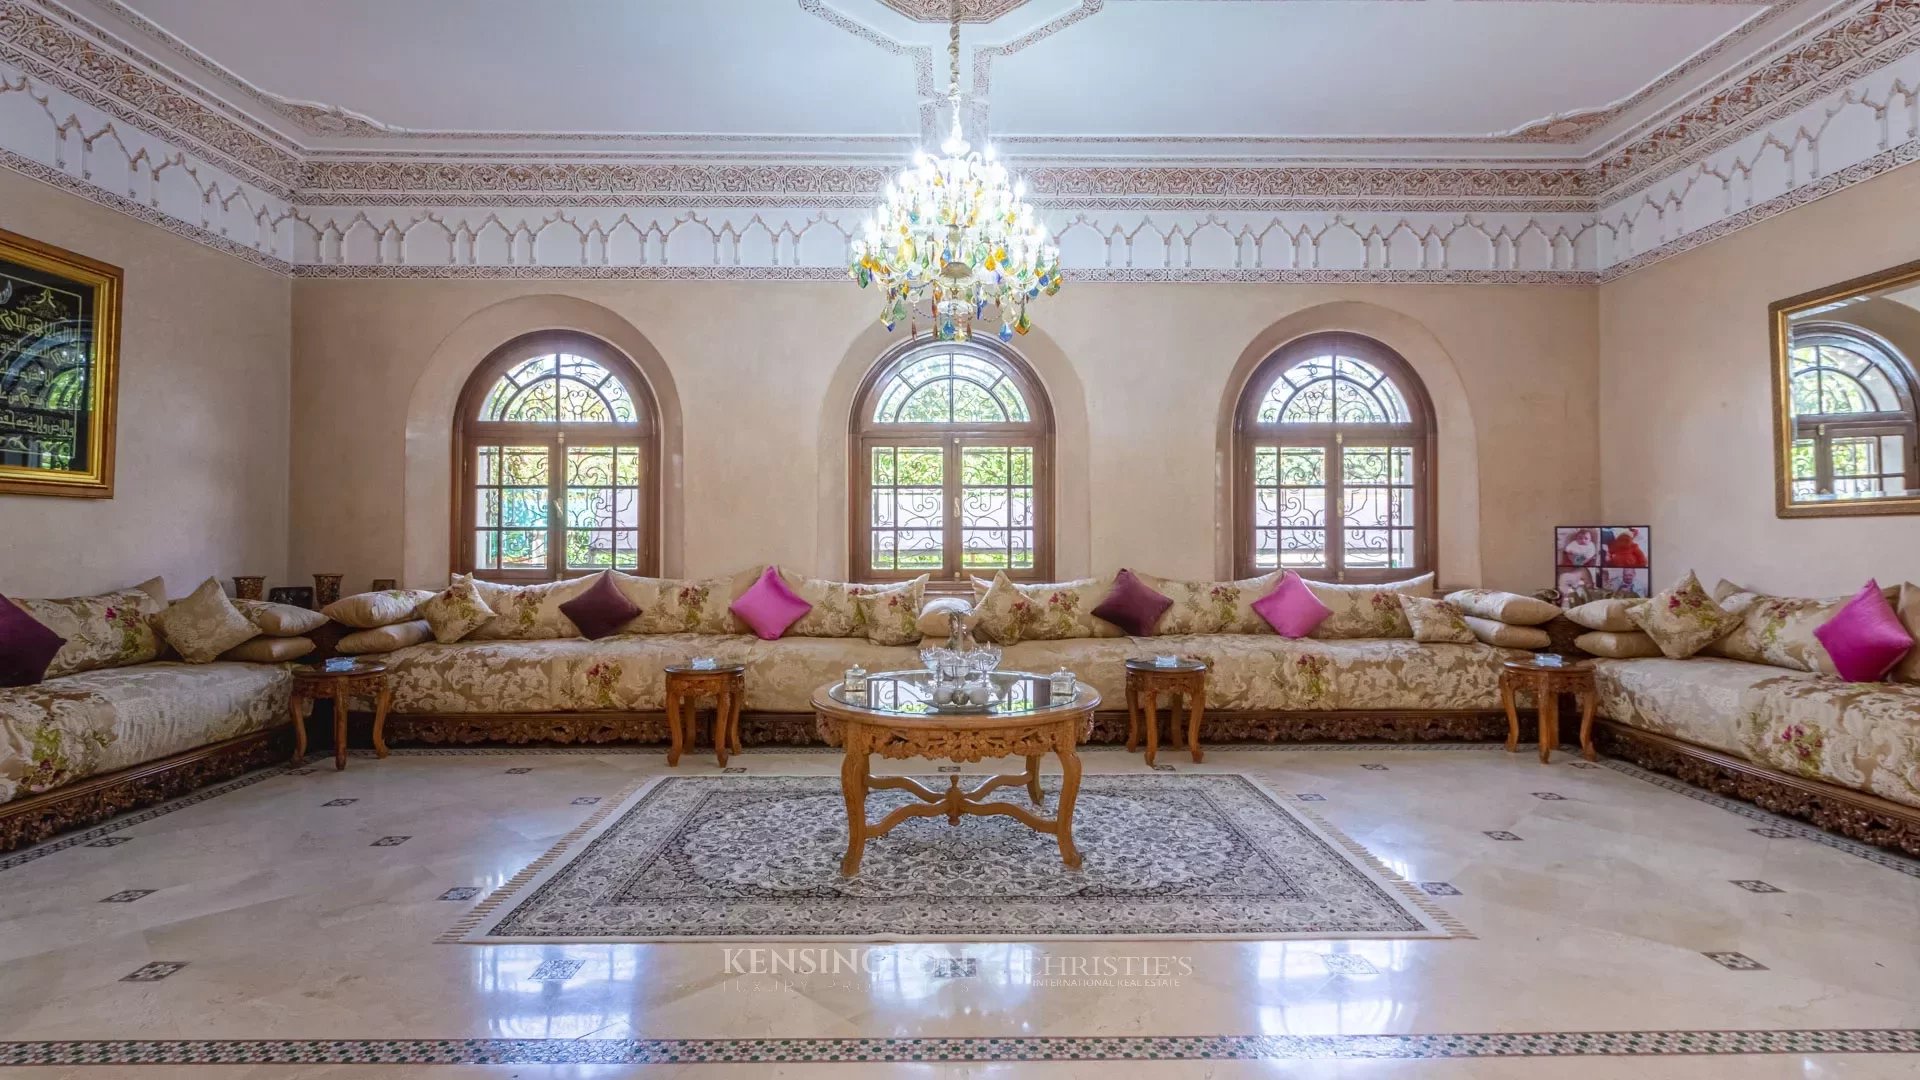 Villa Rialto in Casablanca, Morocco